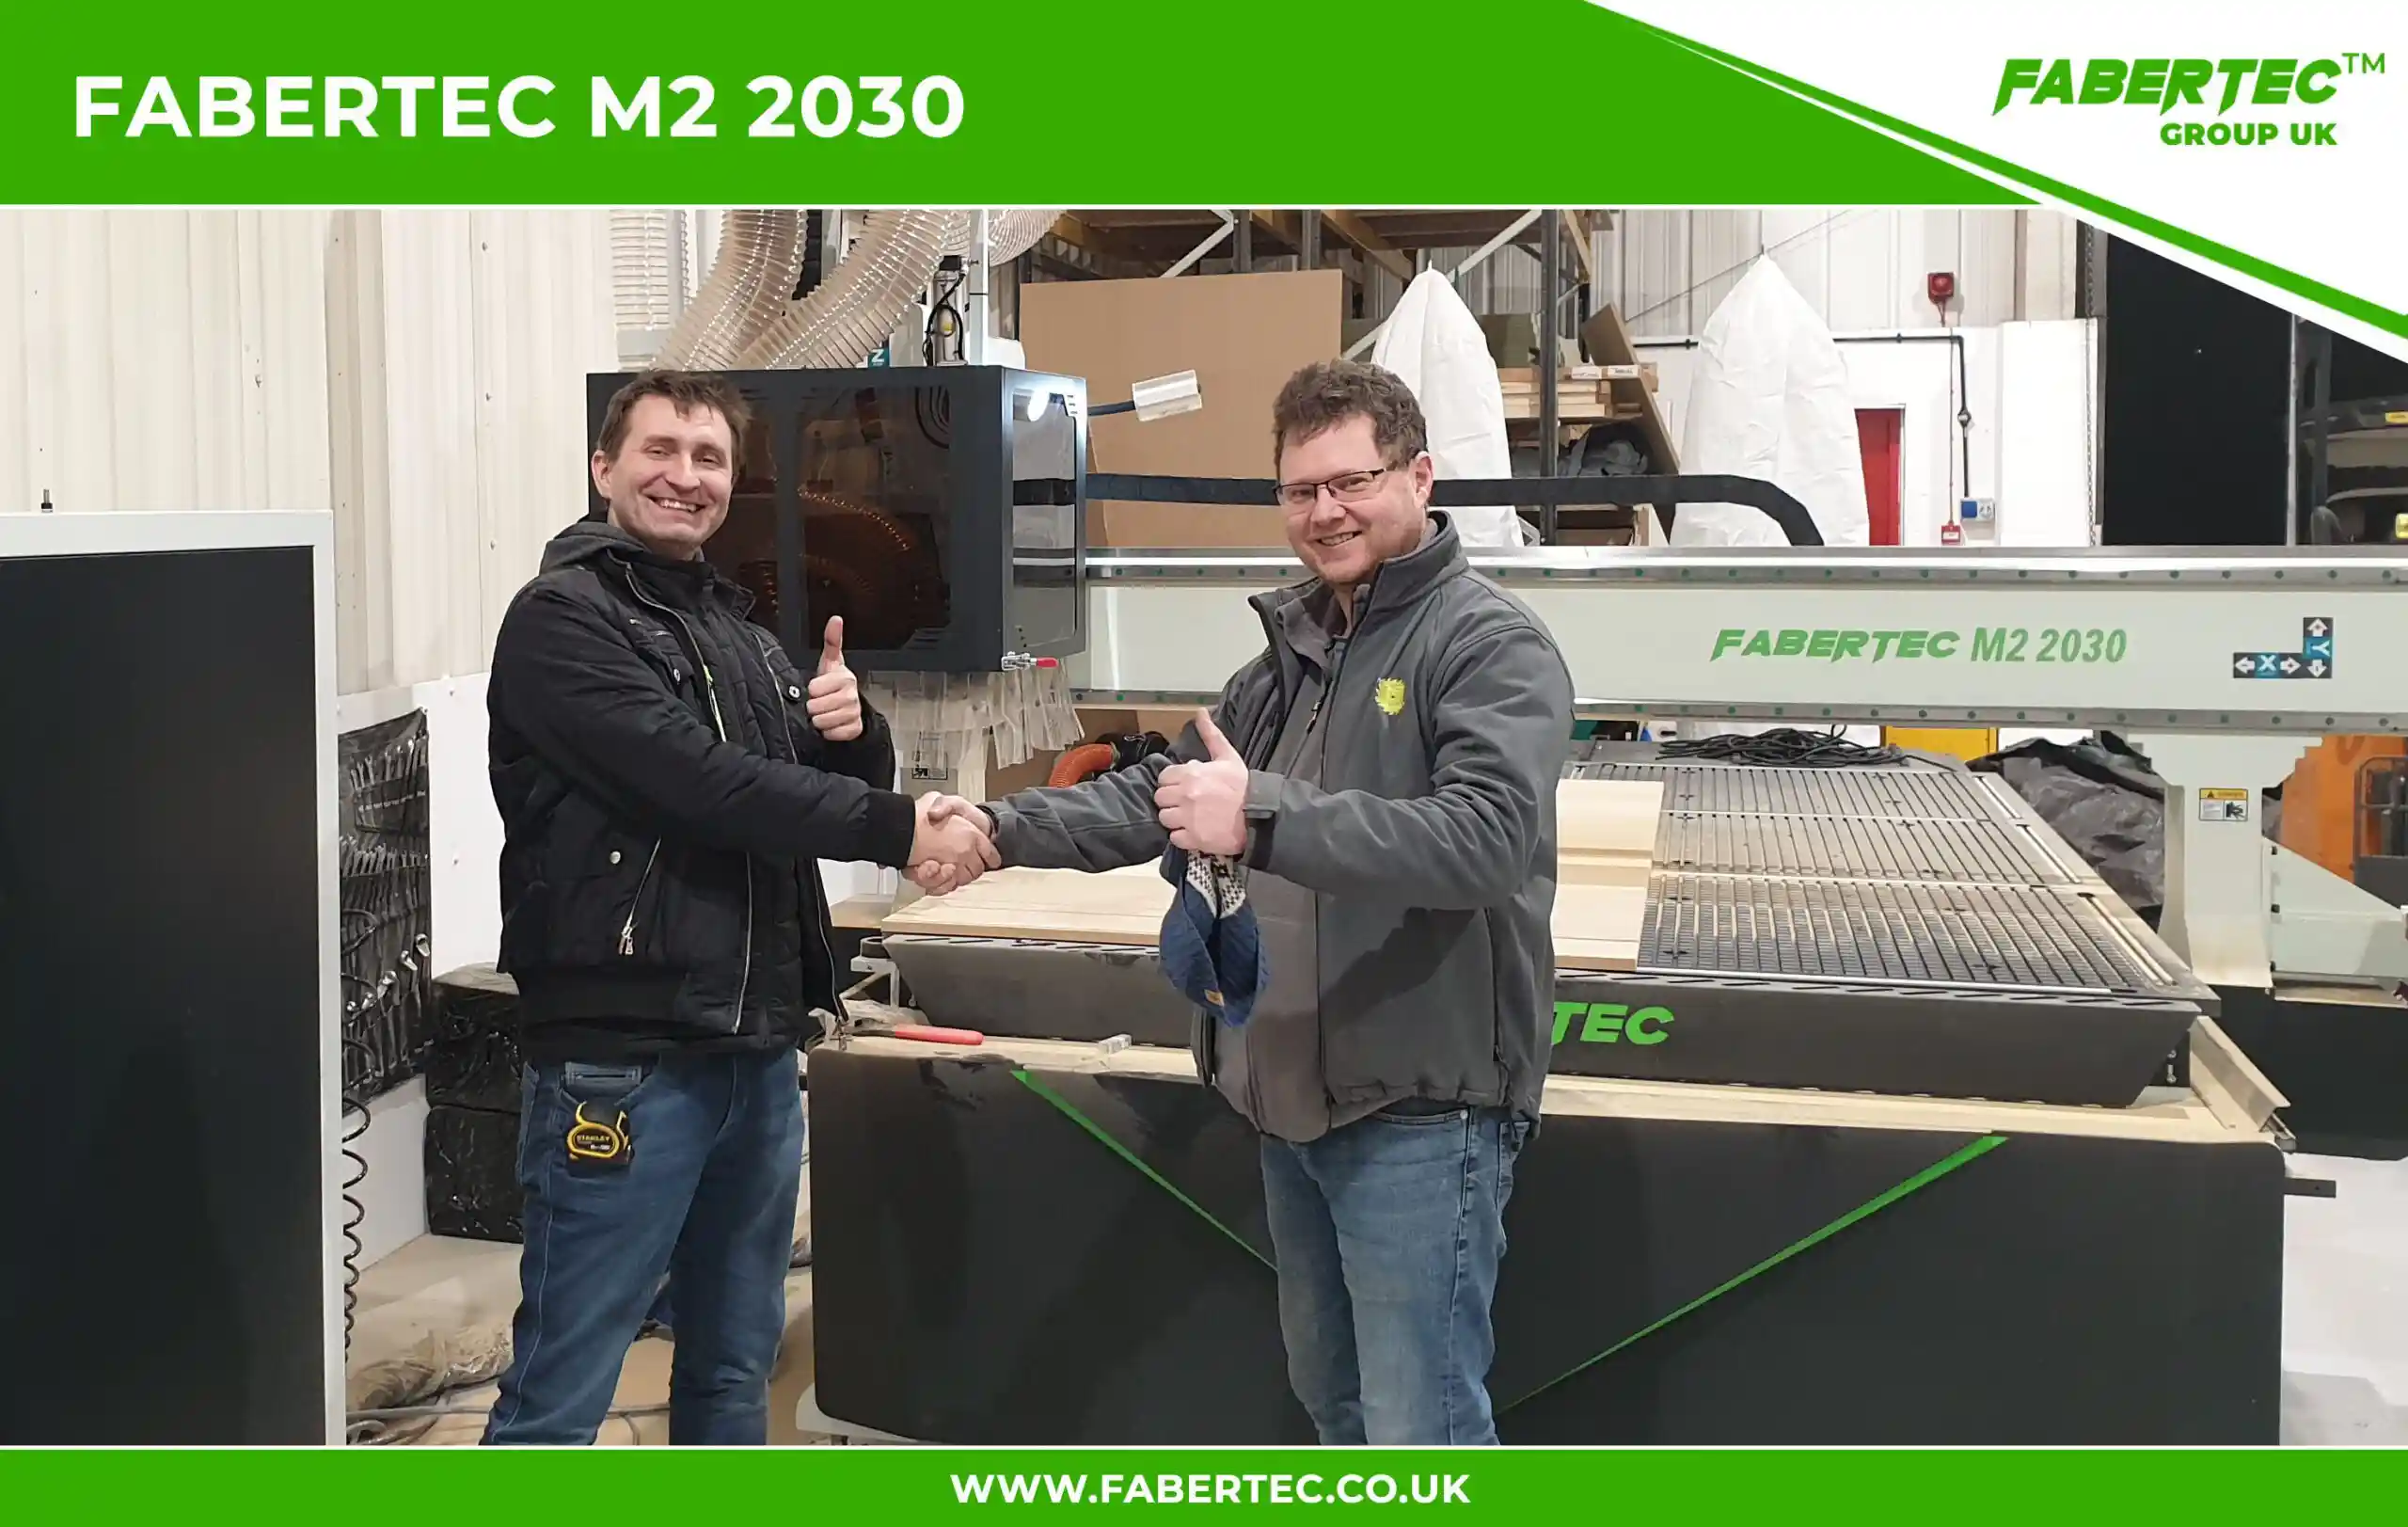 Fabertec M2 2030 CNC Centre Router Installation